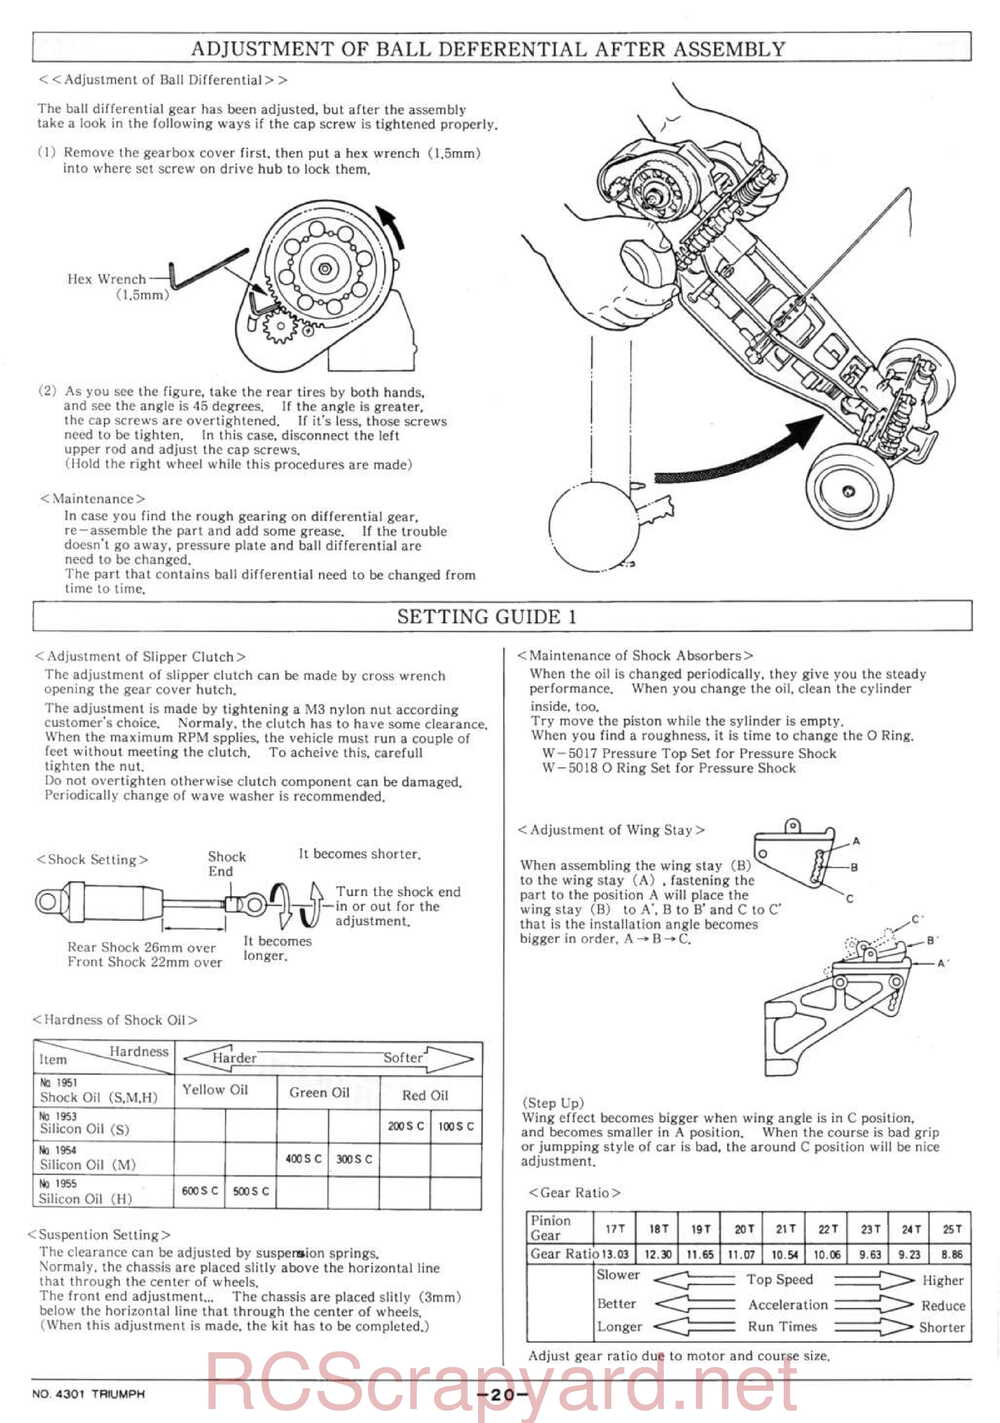 Kyosho - 4301 - Triumph - Manual - Page 20